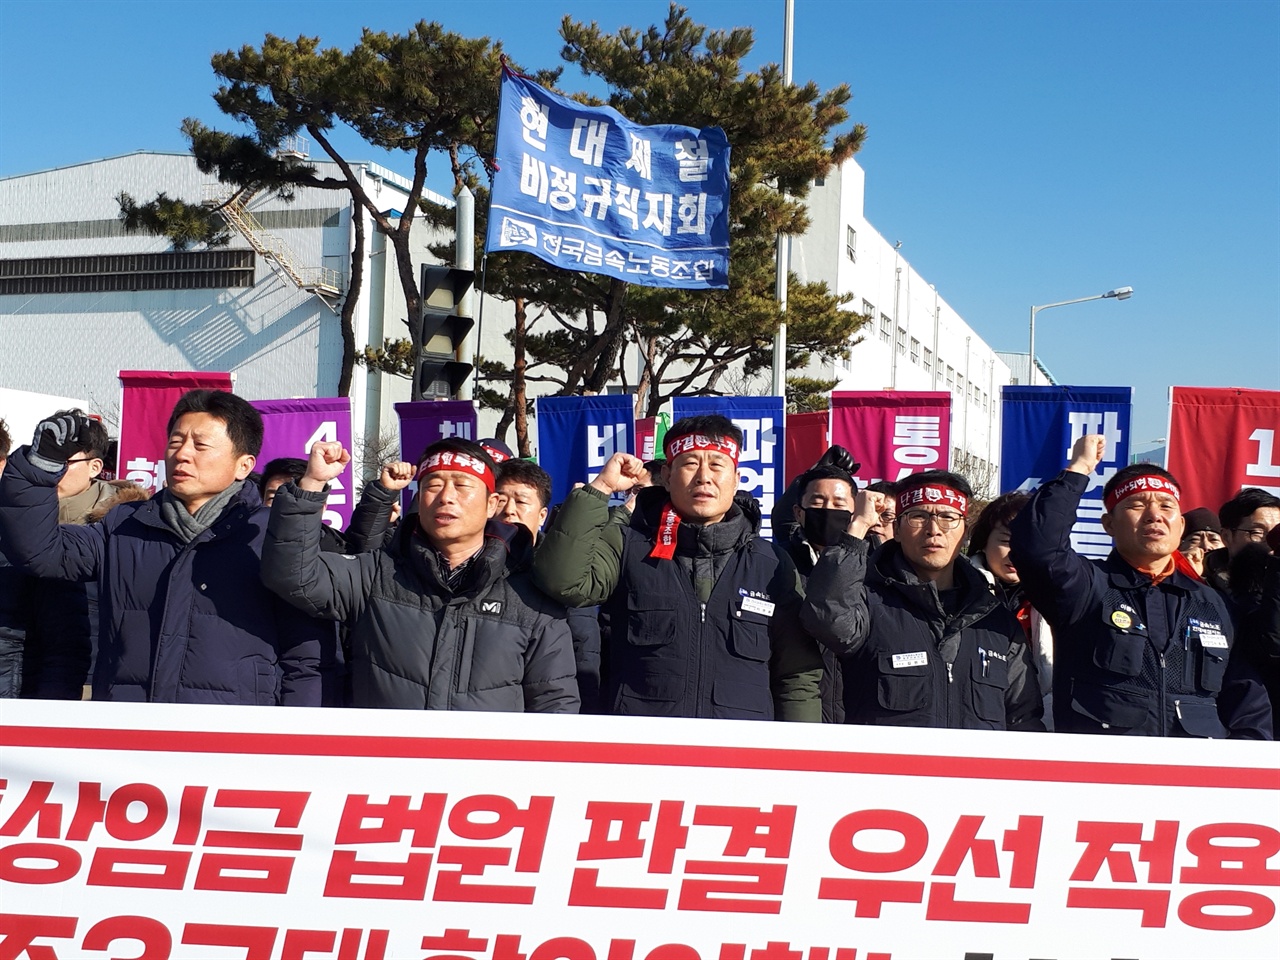 1월 5일 11시 현대제철 순천공장 정문에서 비정규직지회가 통상임금 법적 판결 준수와 4조3교대 이행을 요구하며 무기한 파업을 예고했다. 